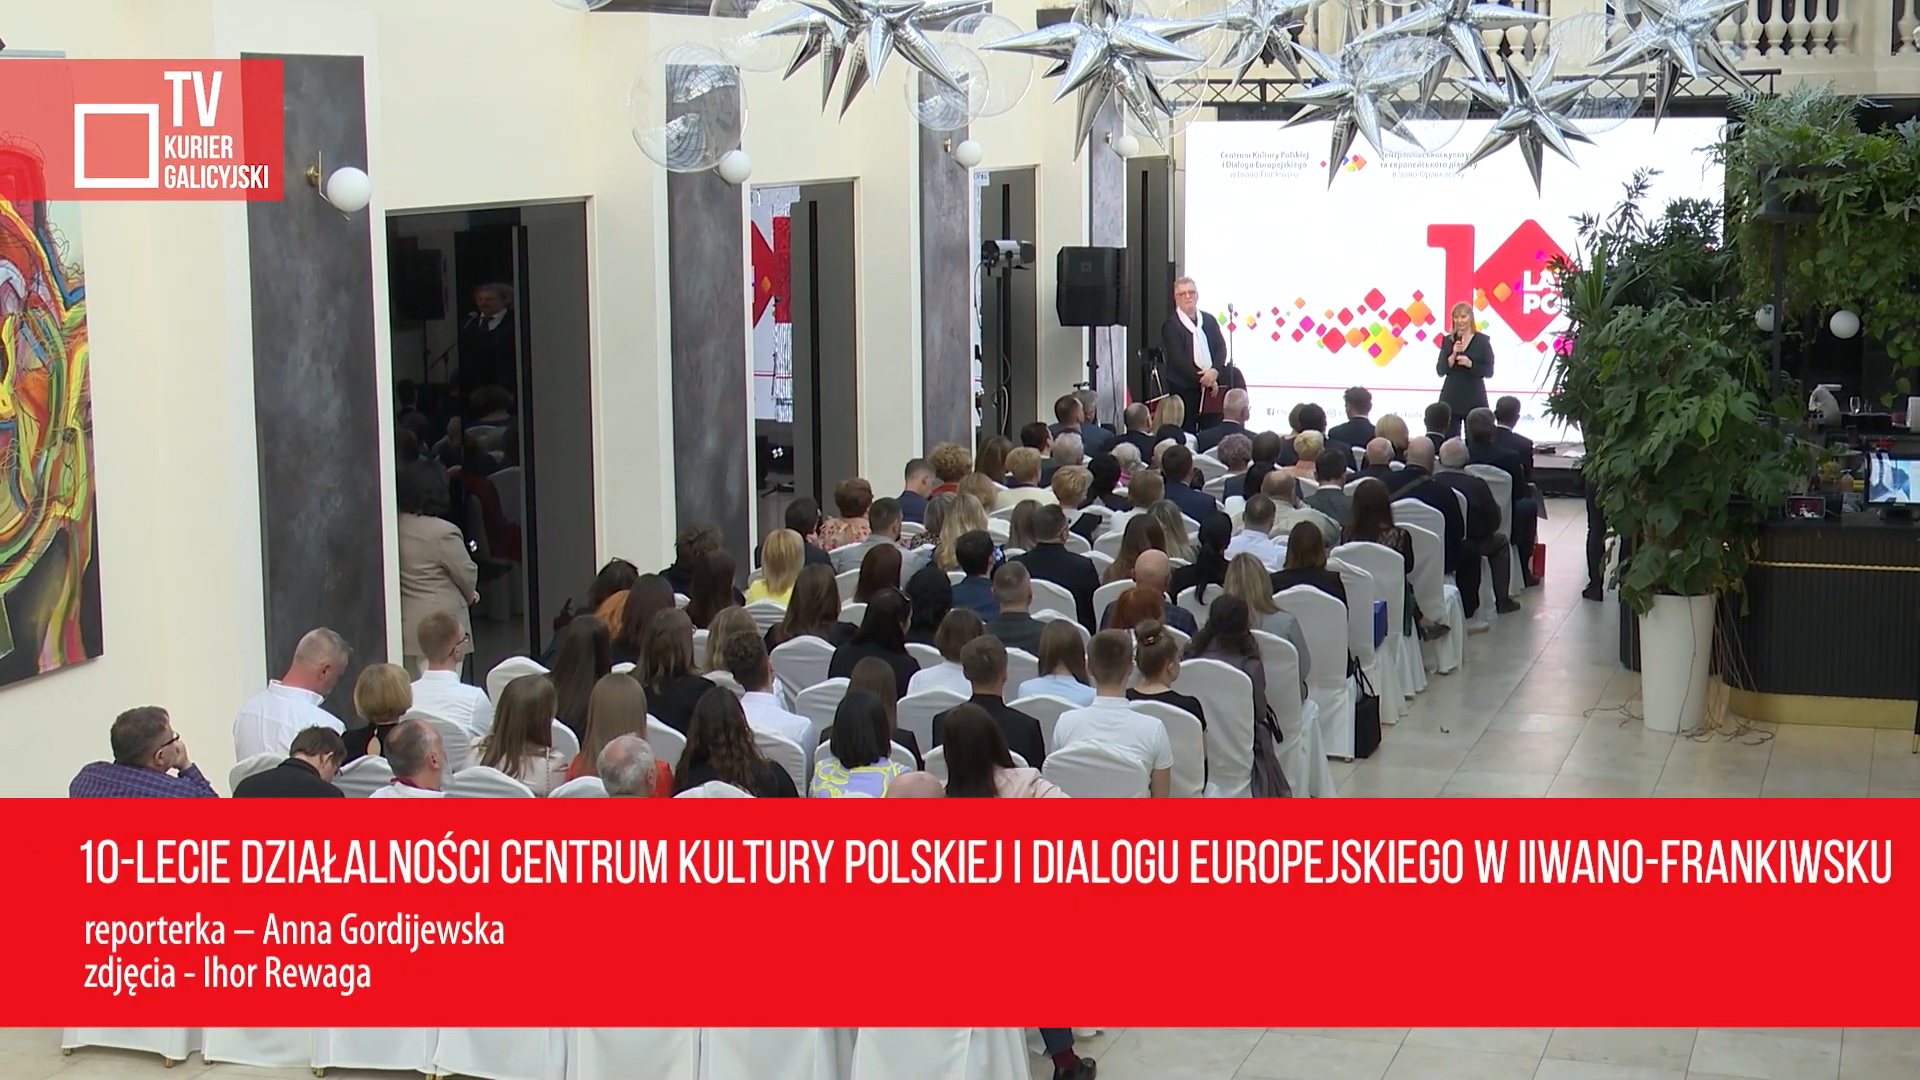 10-річчя діяльності Центру польської культури та європейського діалогу в Івано-Франківську